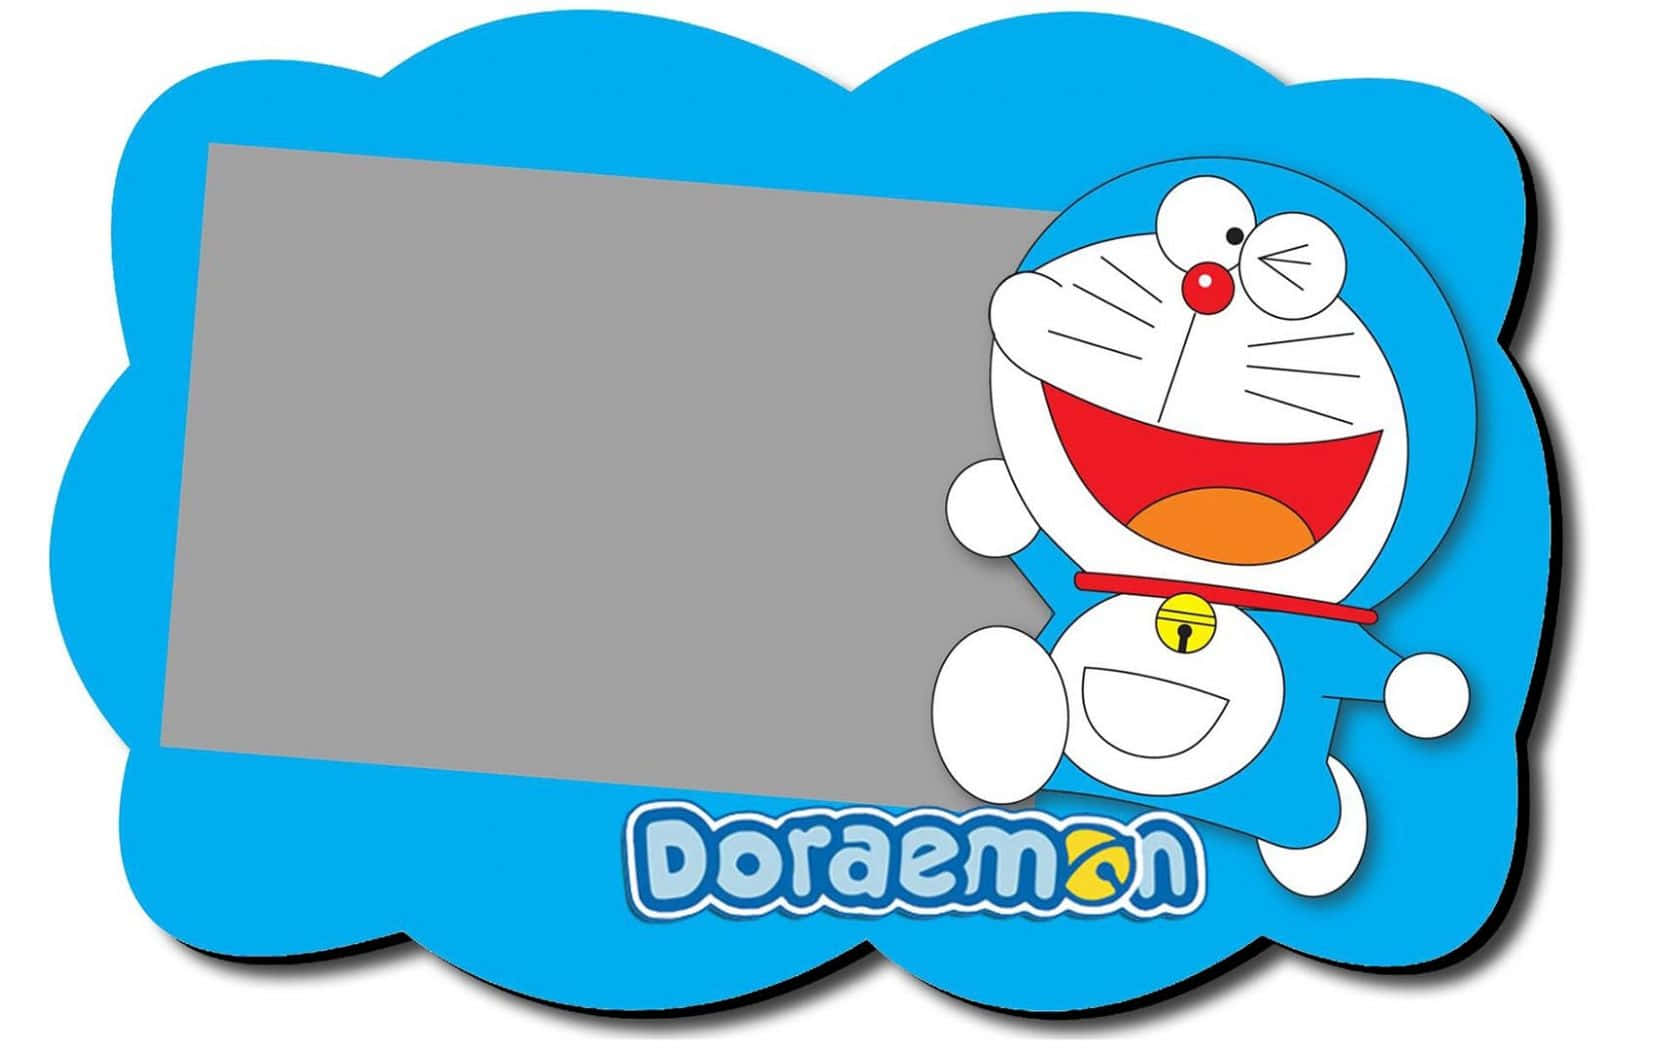 Denelskede Japanske Robotkat, Doraemon.